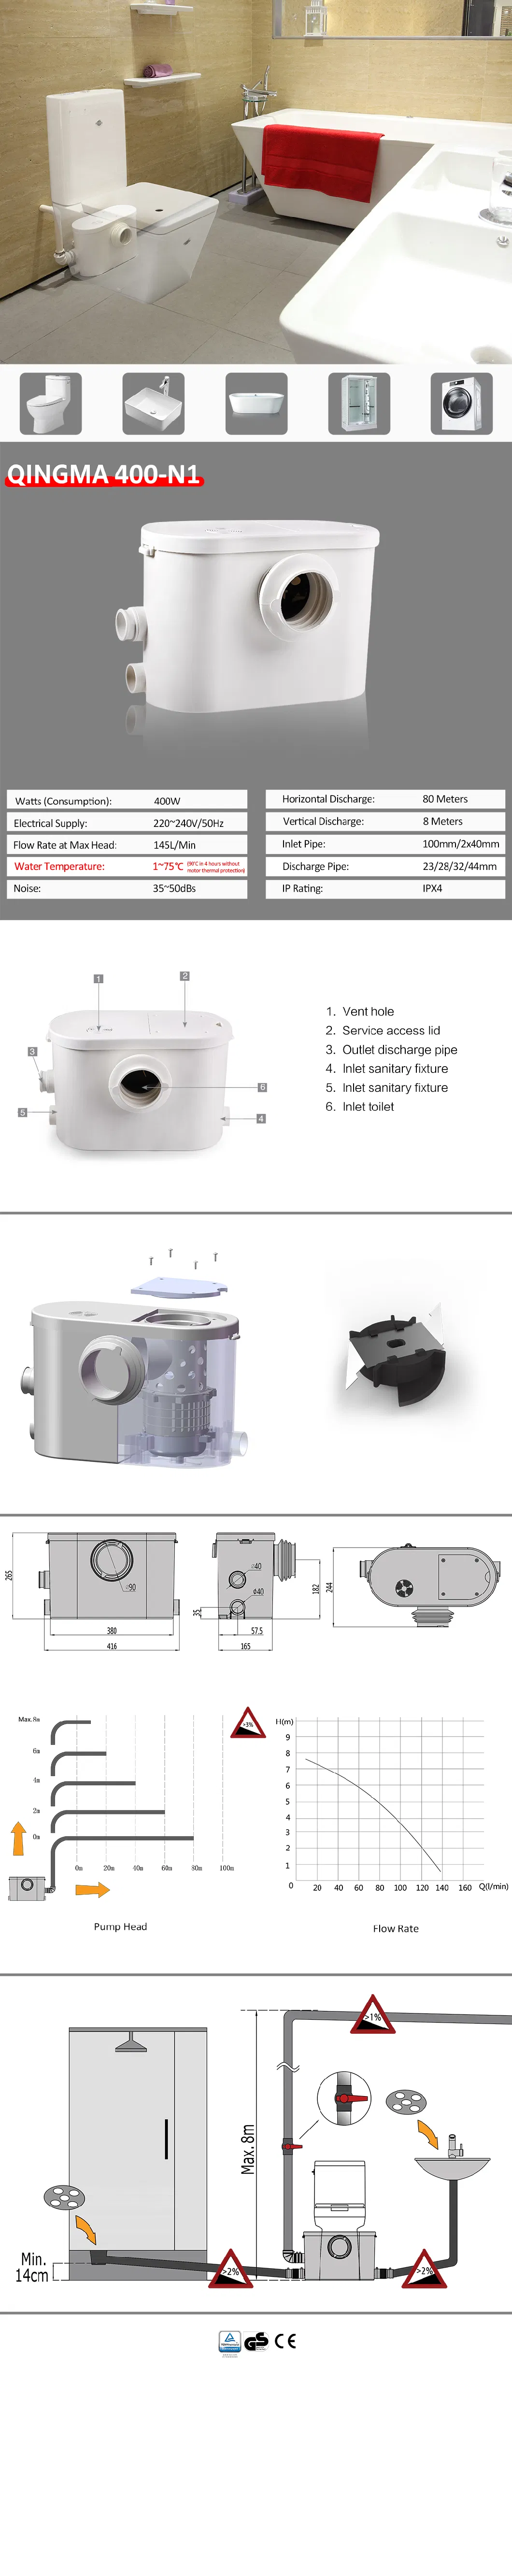 Qingma 400-N1 Sanitaire Broyeur Macerator Pump for Bathroom Waste Water